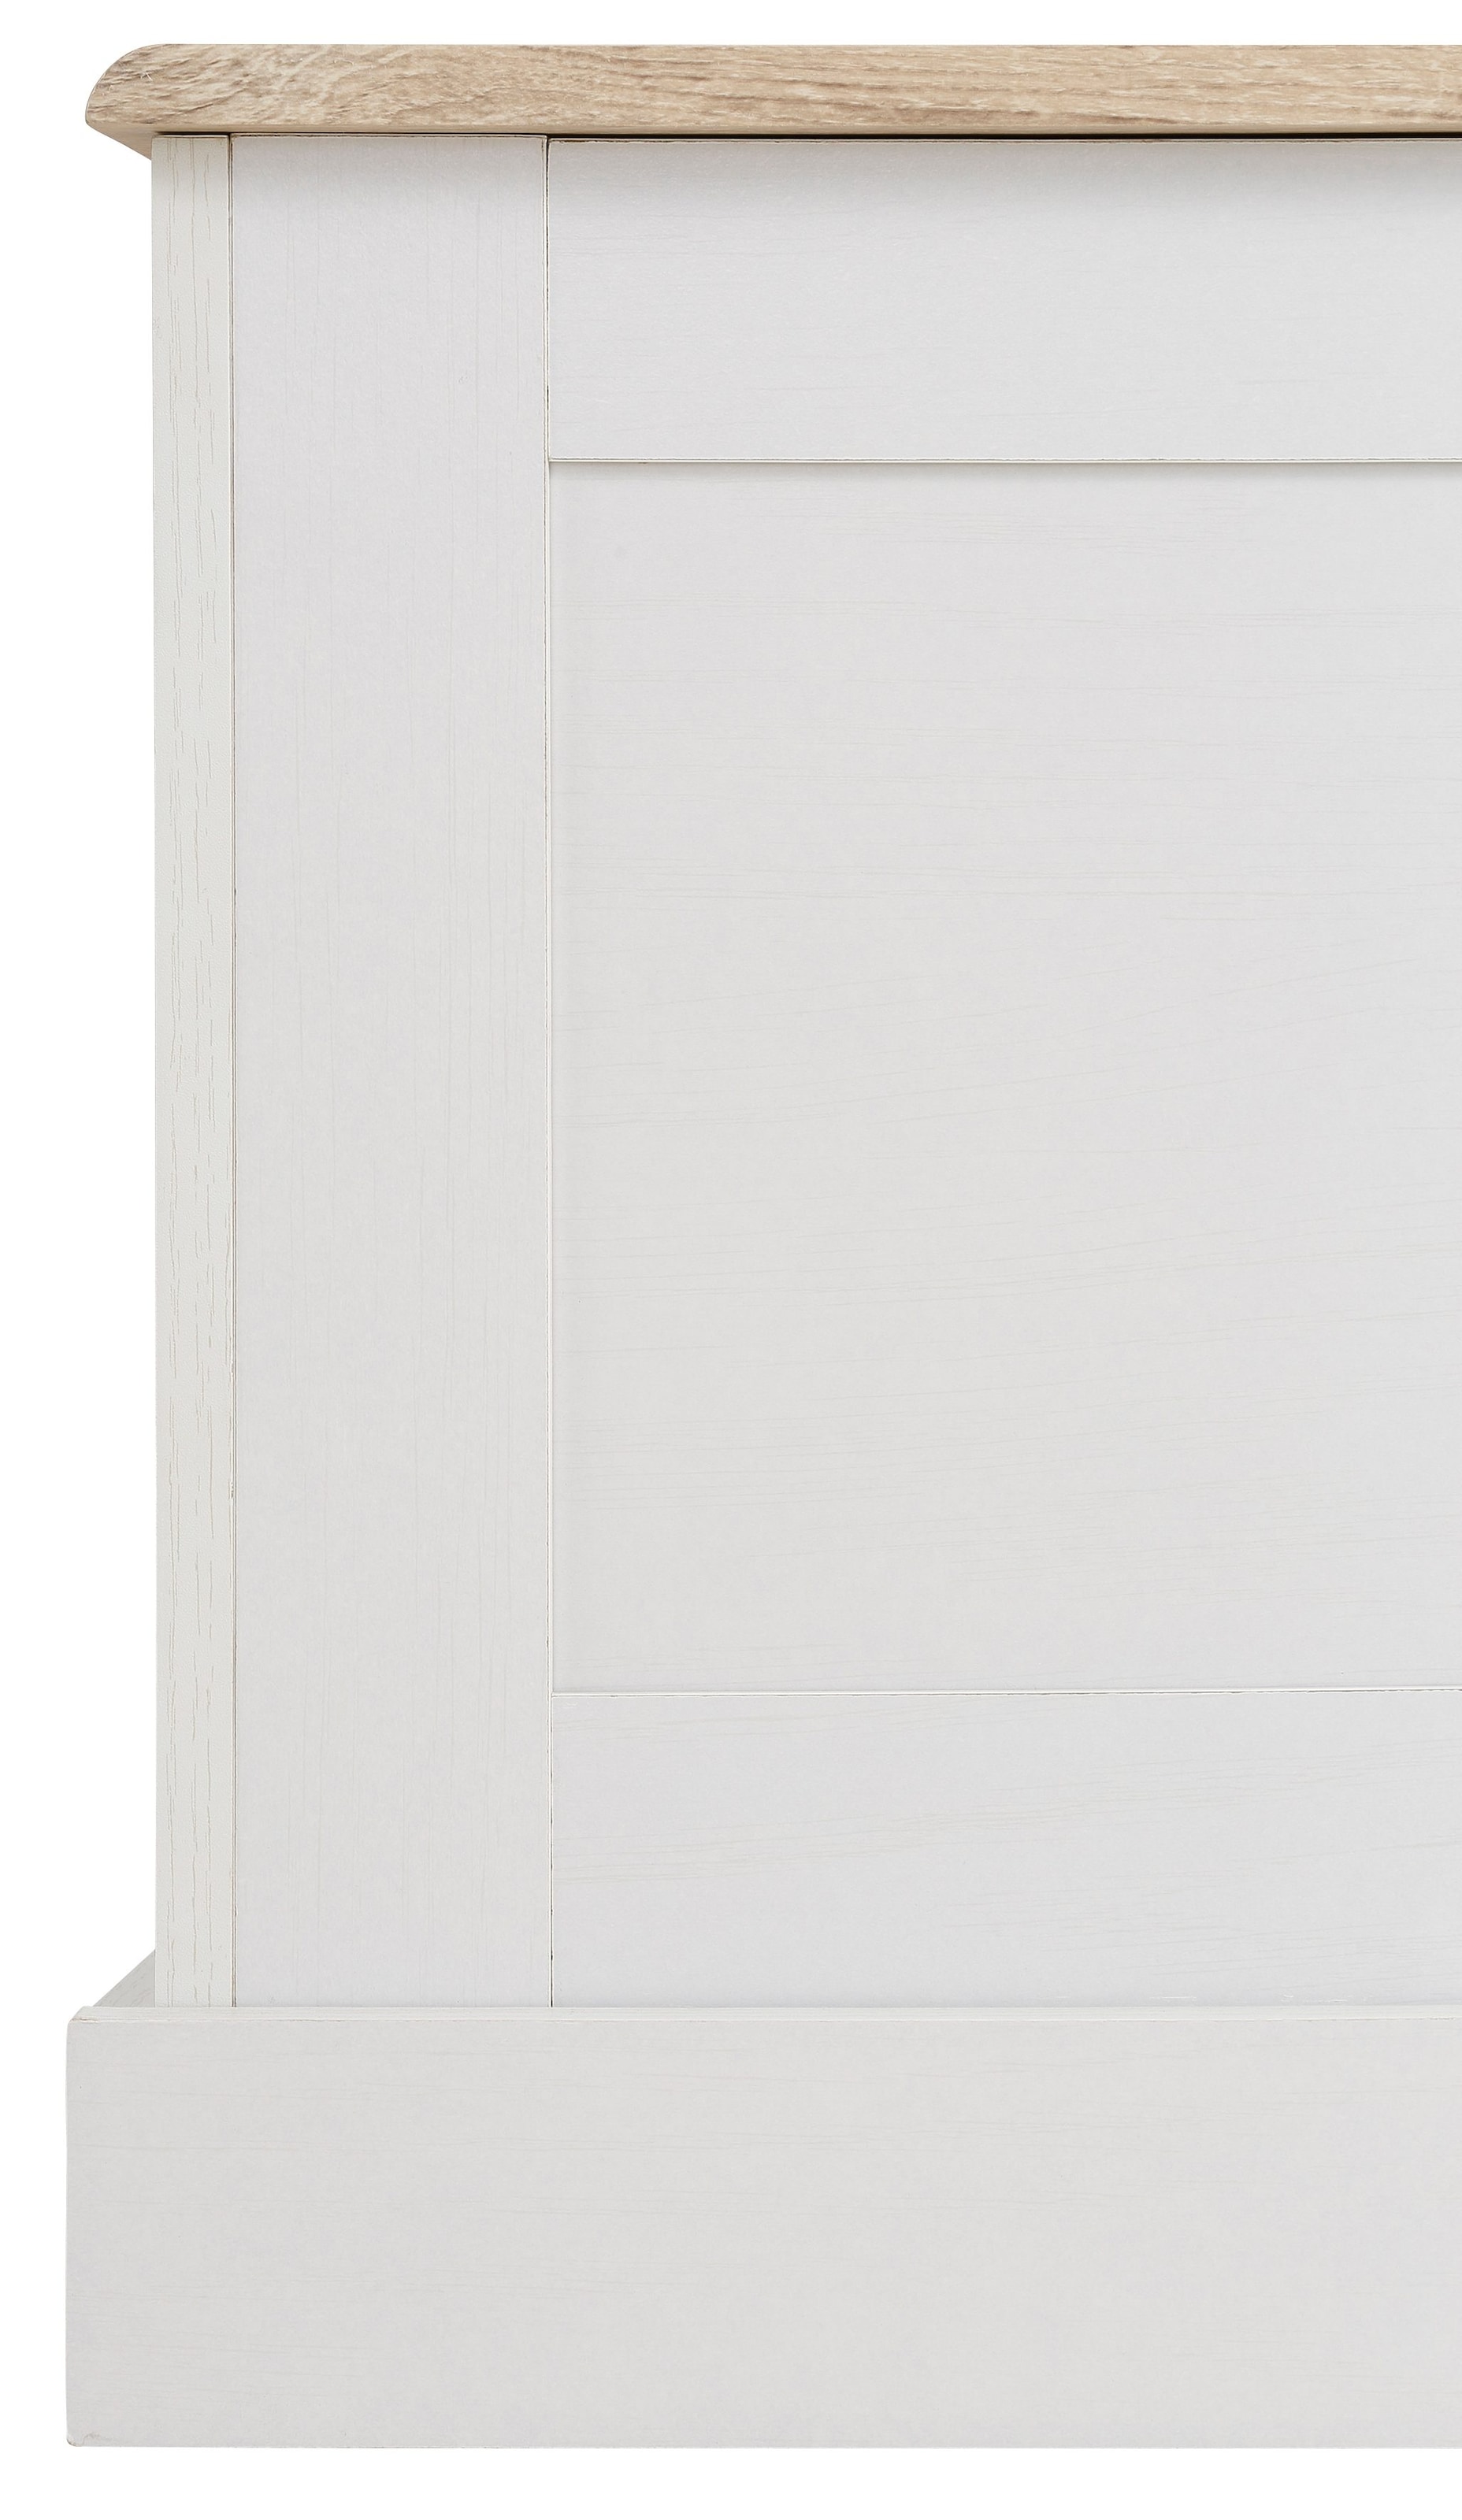 Home affaire Sitzbank »Binz«, zwei unterschiedliche Farbvarianten, mit Stauraum, Breite 90 cm